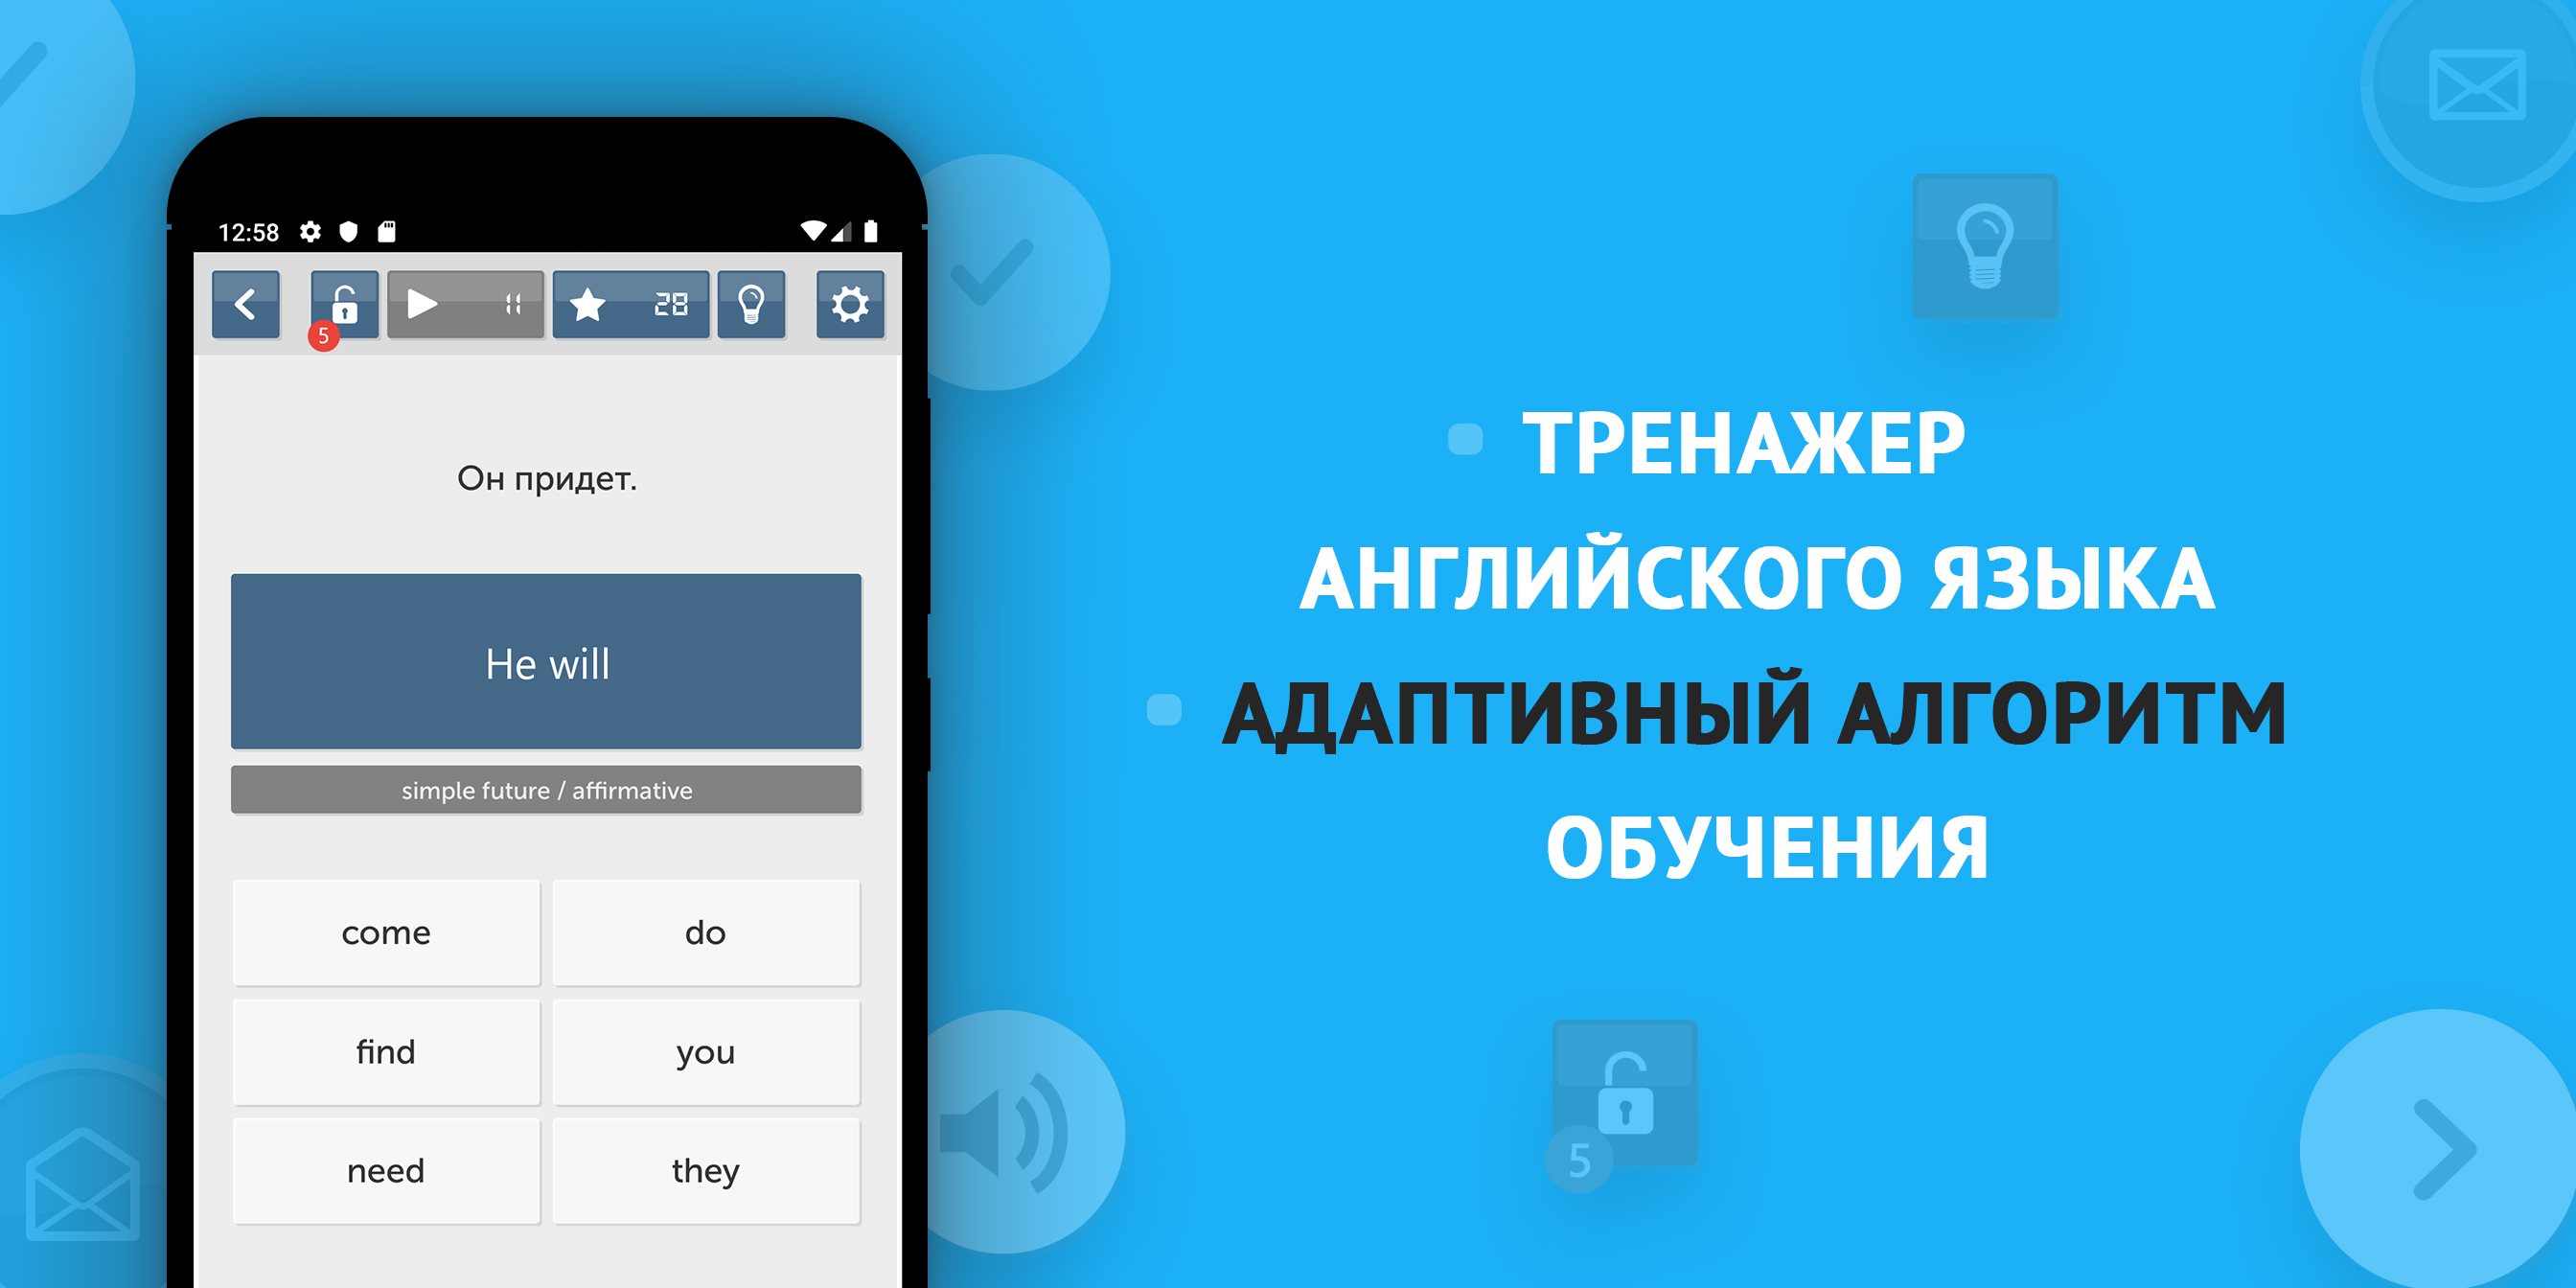 Android application En16: Английский с нуля. Курс для начинающих. screenshort